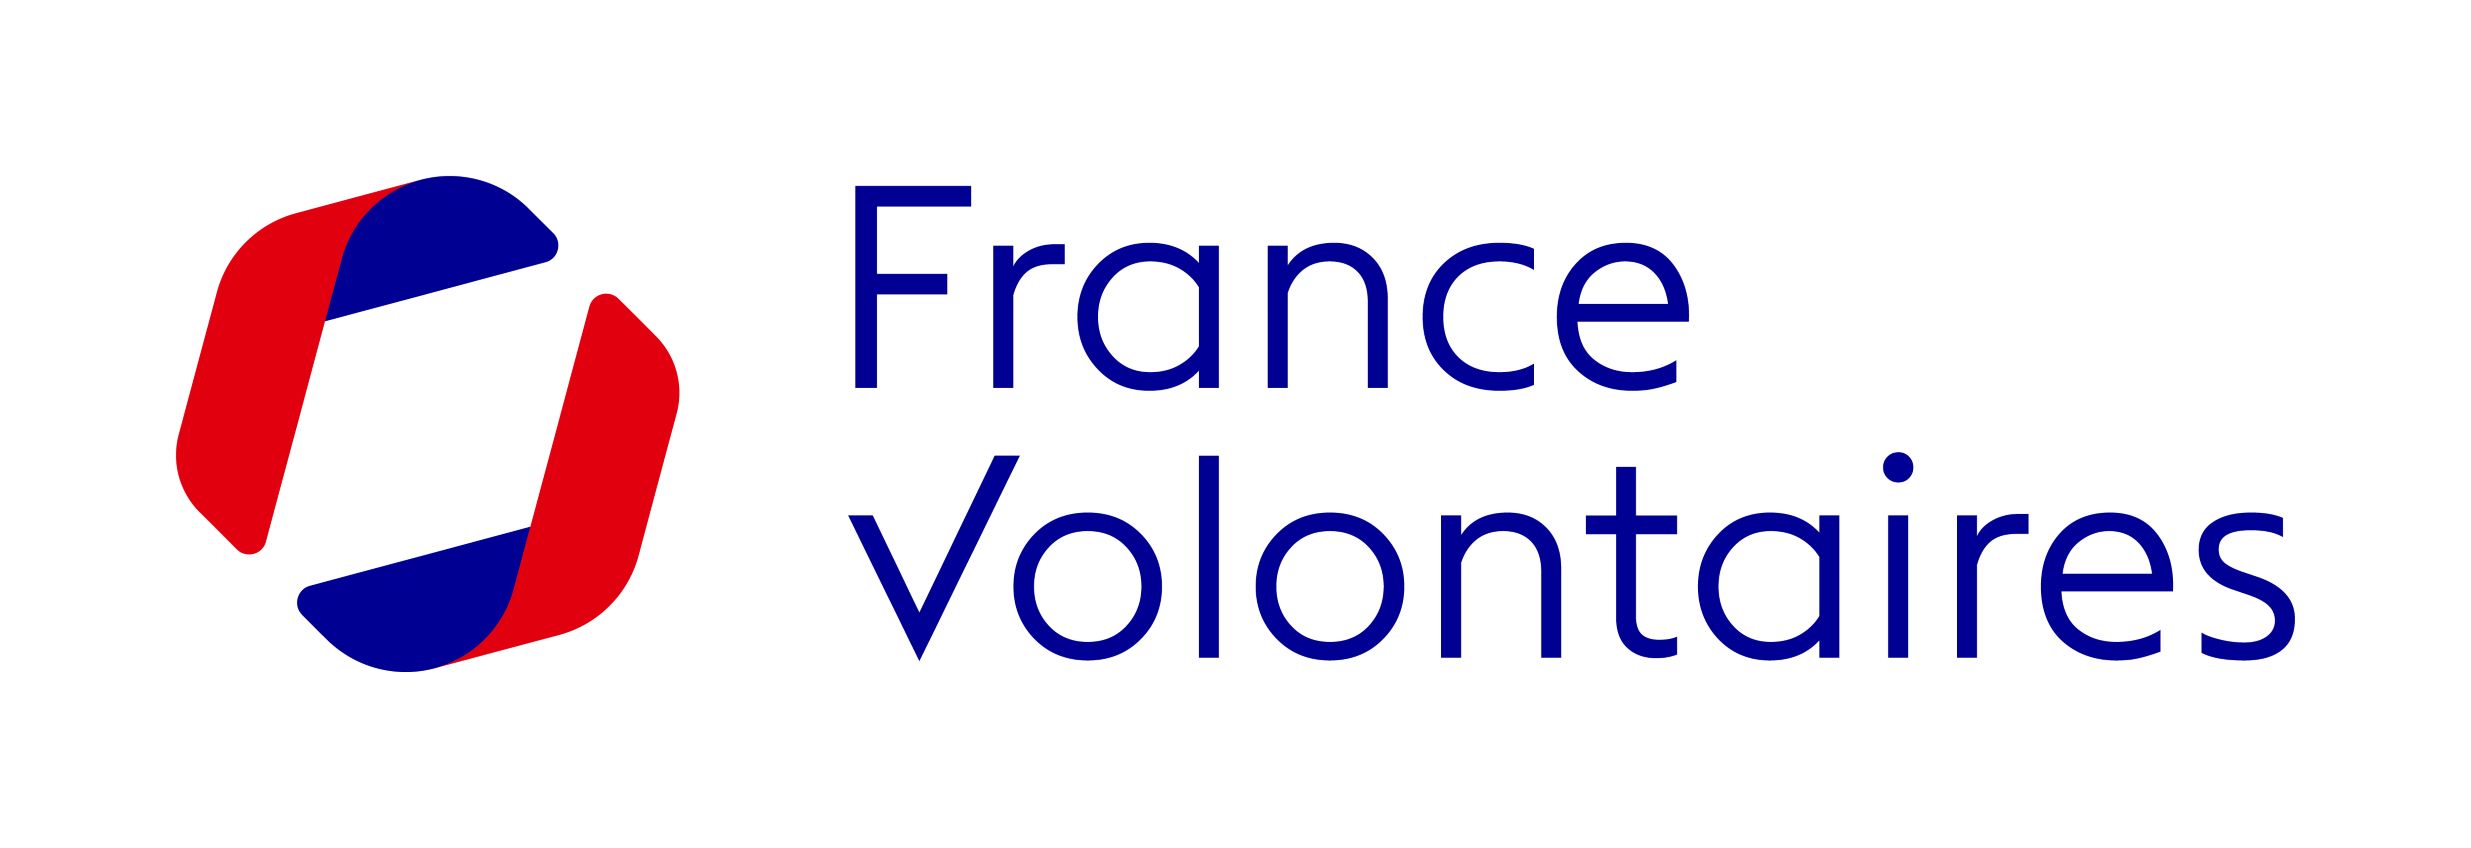 Logo - France Volontaires - H - Logo rouge et bleu (2) (003)